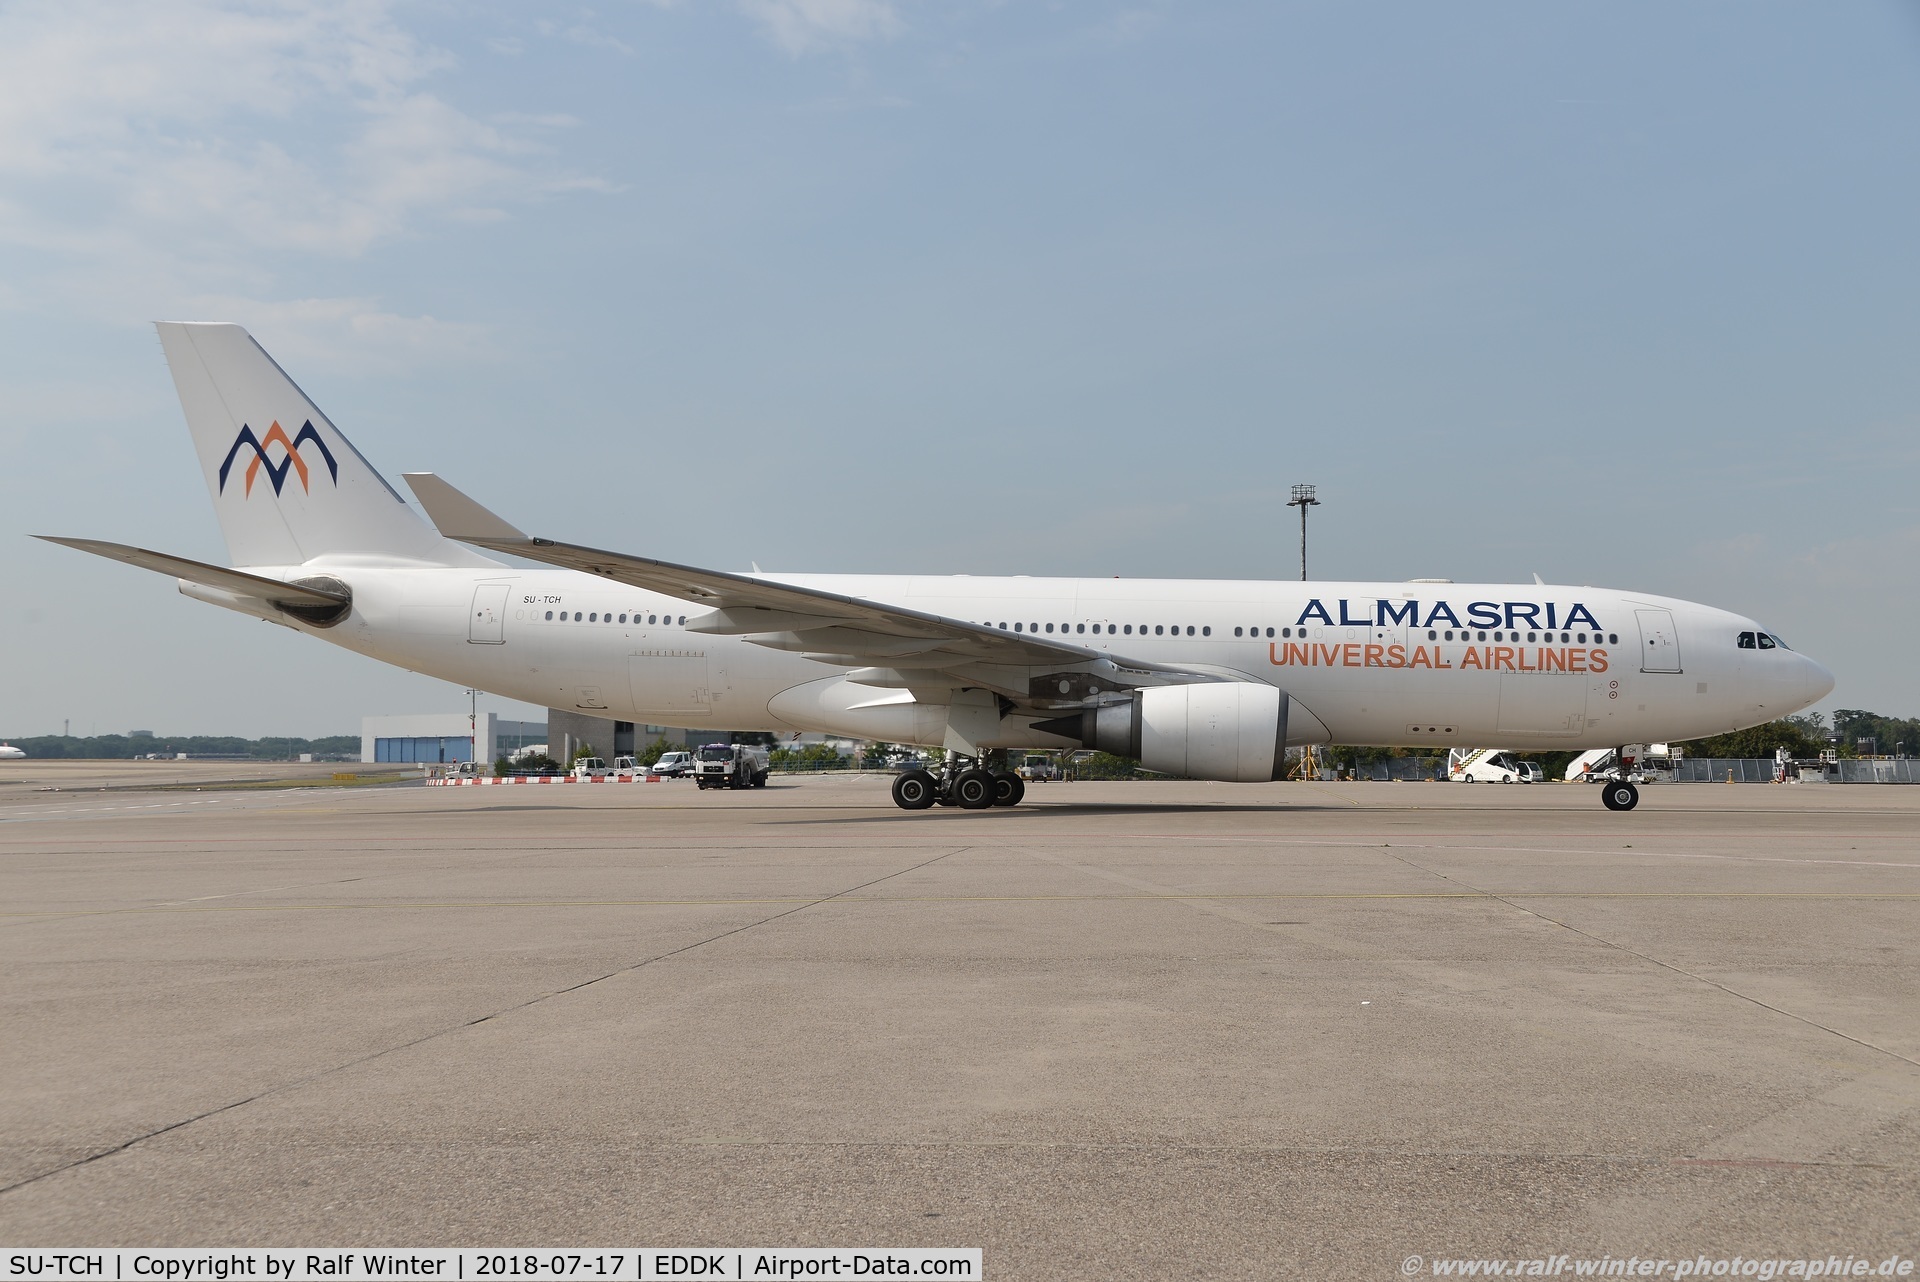 SU-TCH, 2005 Airbus A330-203 C/N 661, Airbus A330-203 - UJ LMU AlMasria Universal Airines - 561 - SU-TCH - 17.07.2018 - CGN